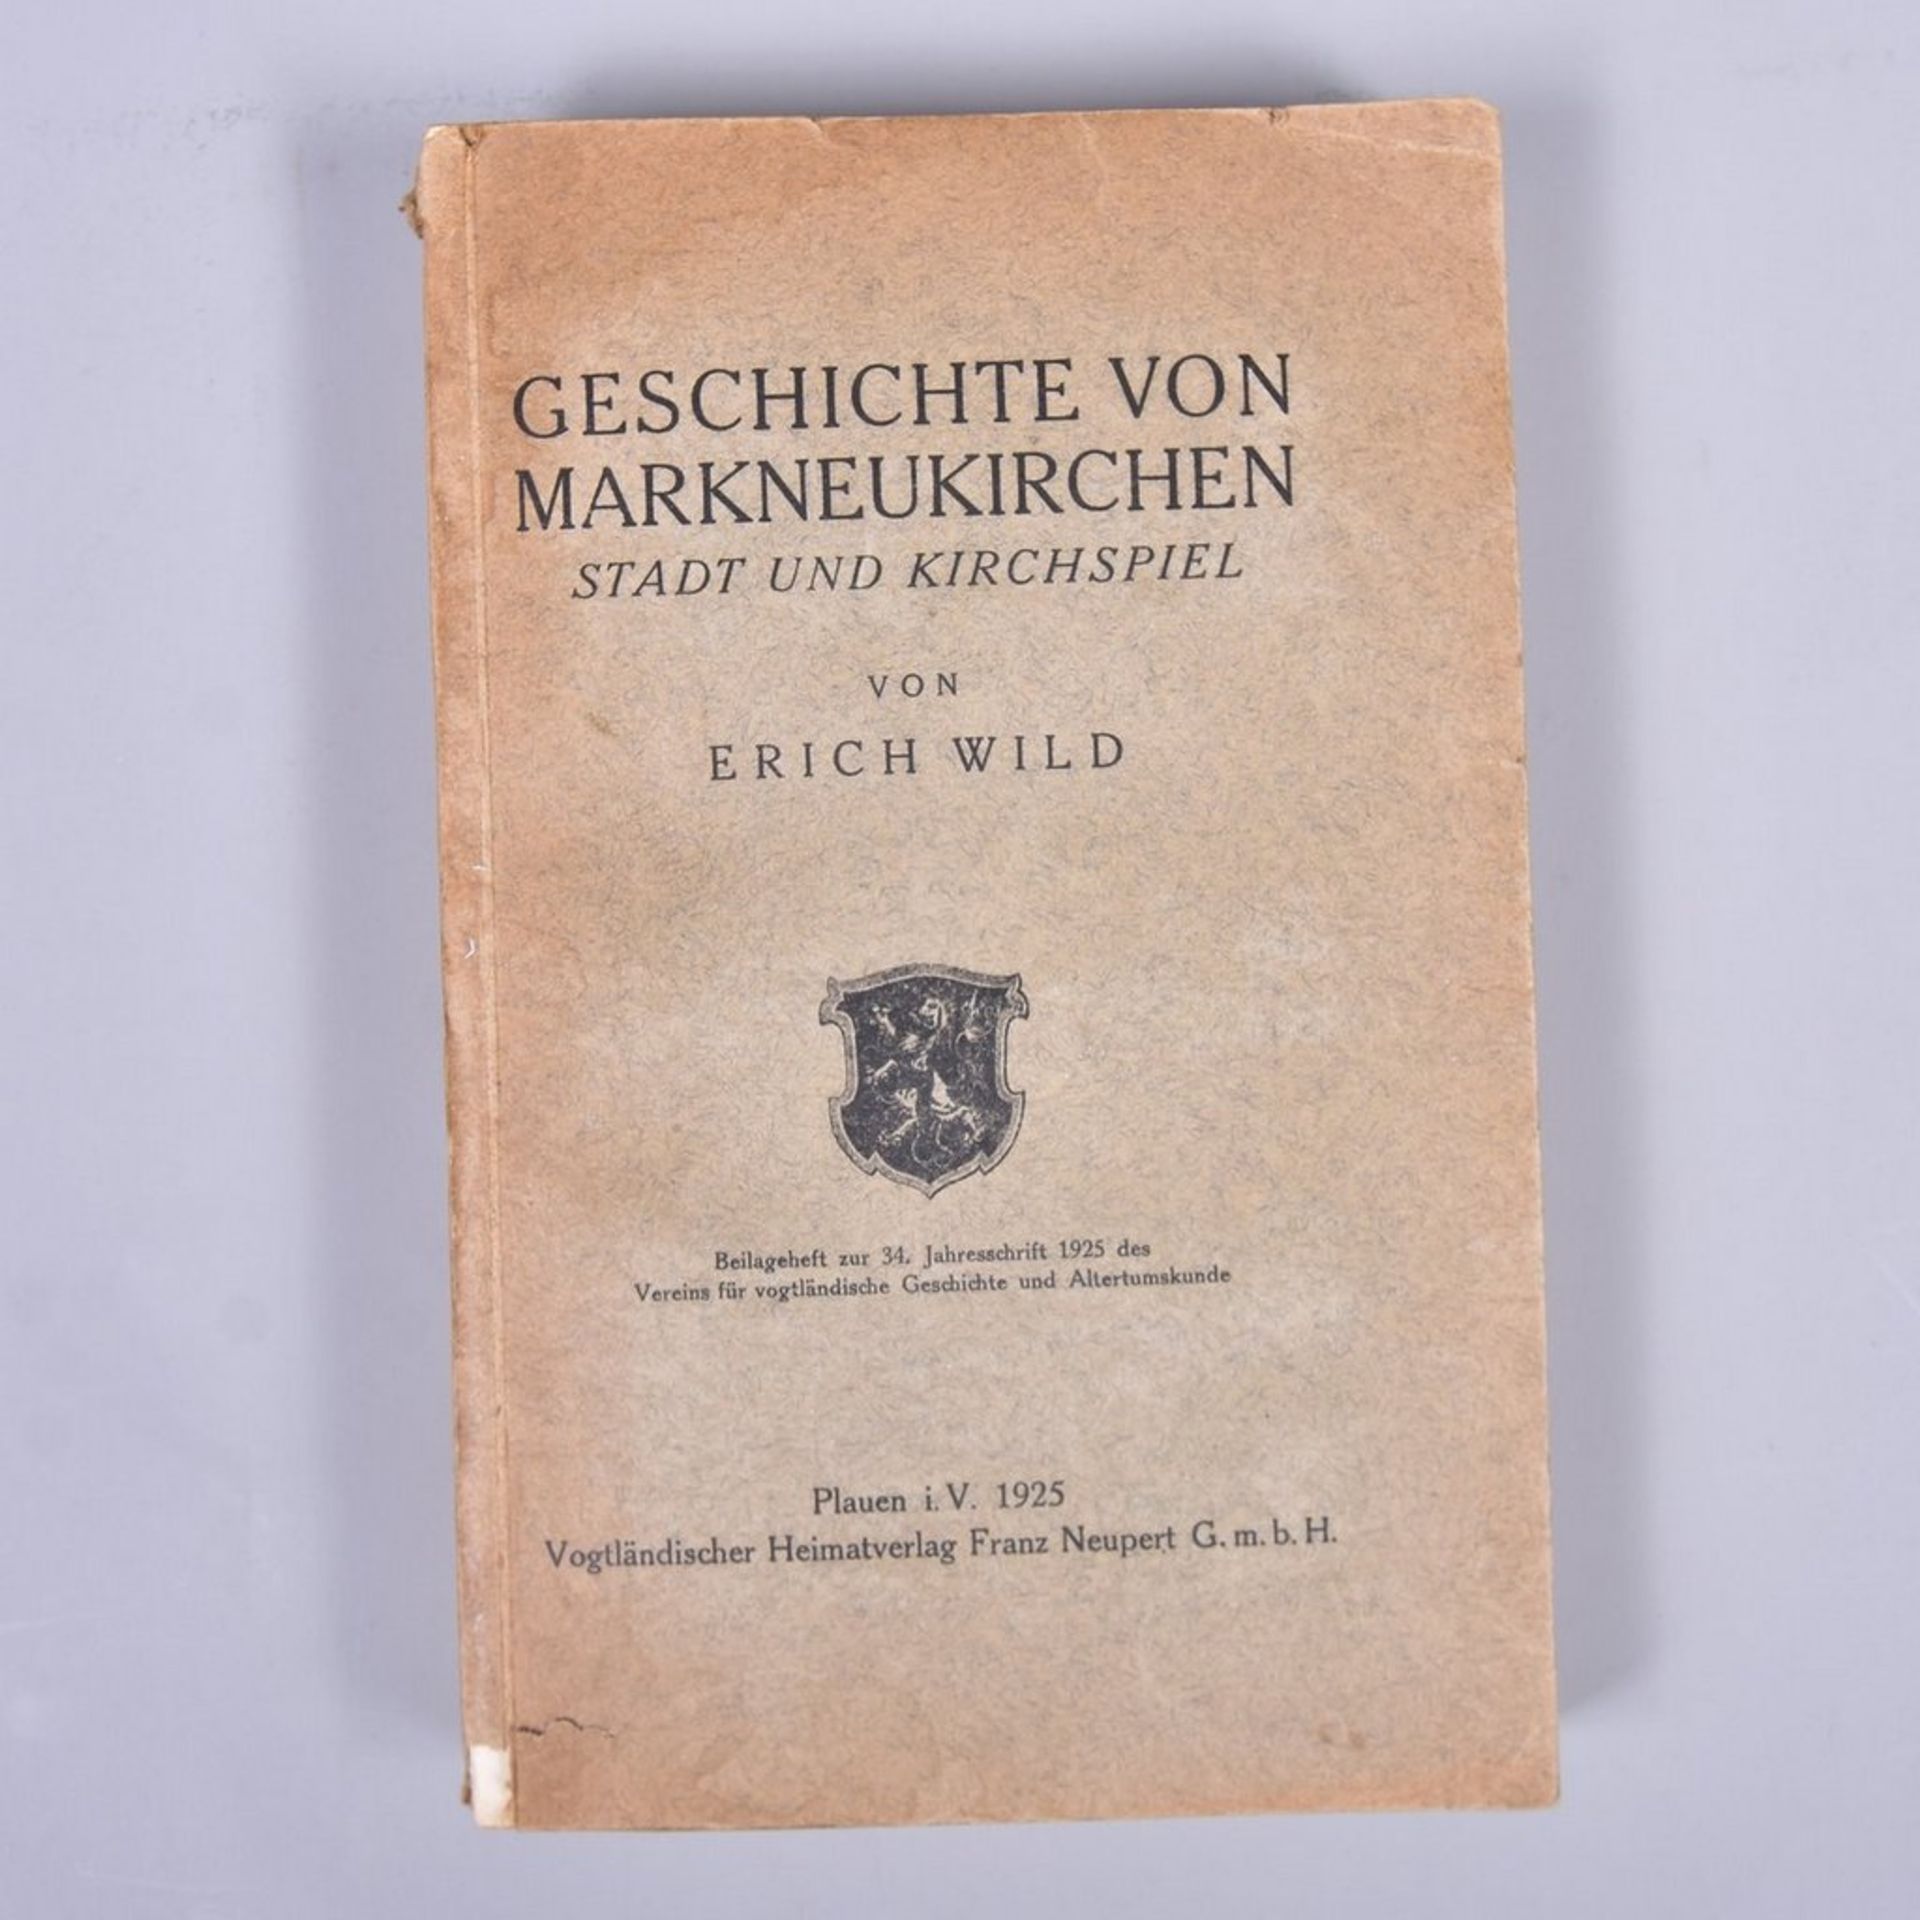 "Geschichte von Markneukirchen- Stadt-und Kirchenspiel", Erich Wild, Vogtl. Heimatverlag F. Neupert,